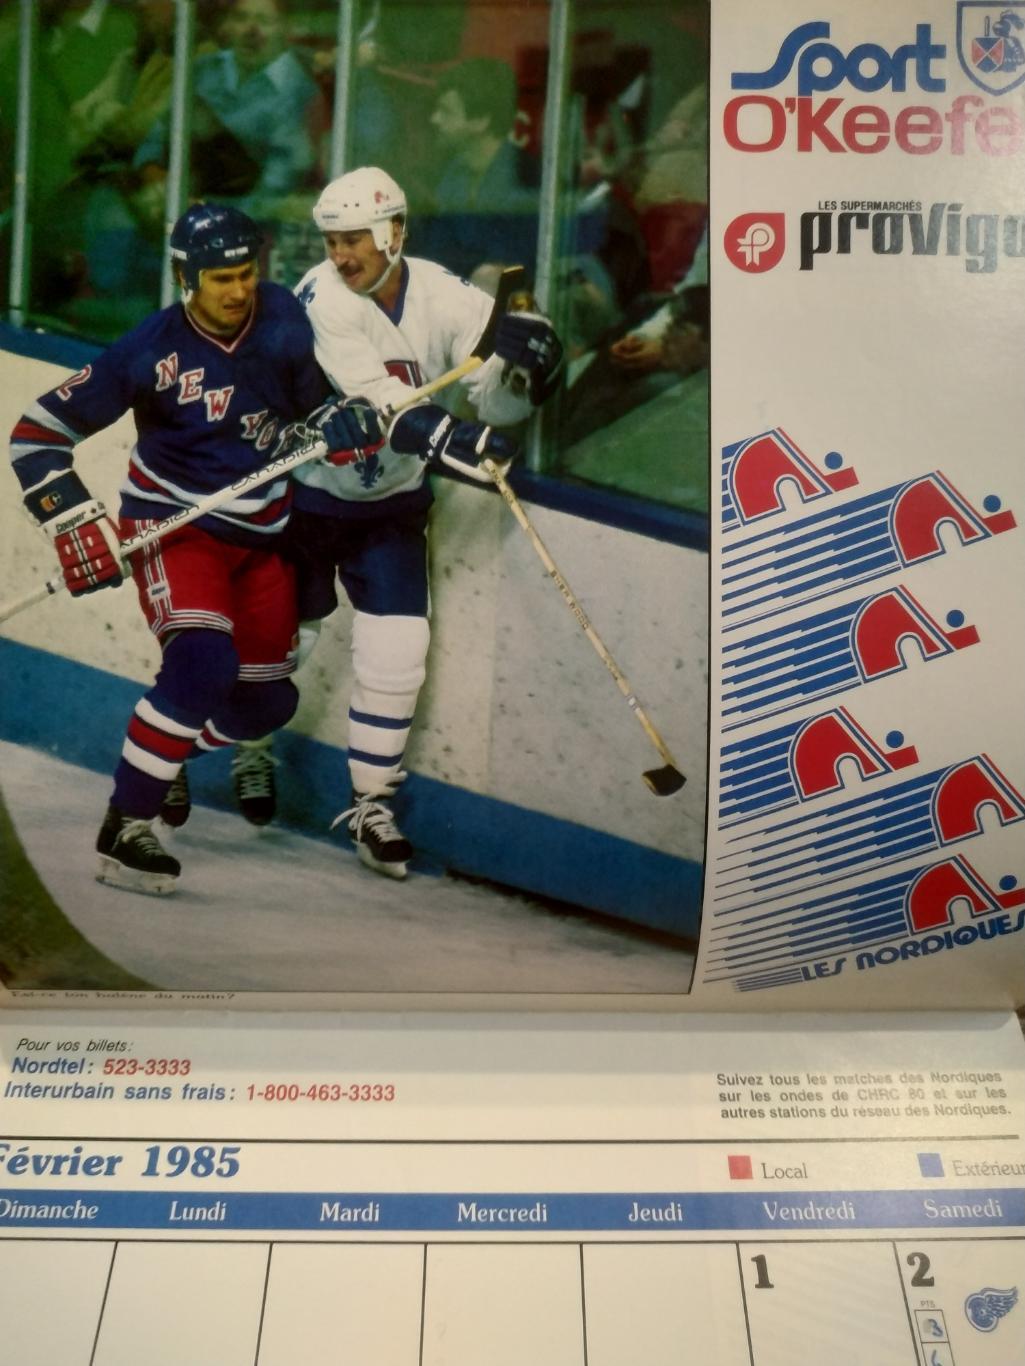 ХОККЕЙ КАЛЕНДАРЬ НХЛ КВЕБЕК НОРДИКС 1985 NHL LES NORDIQUES OFFICIAL CALENDAR 2